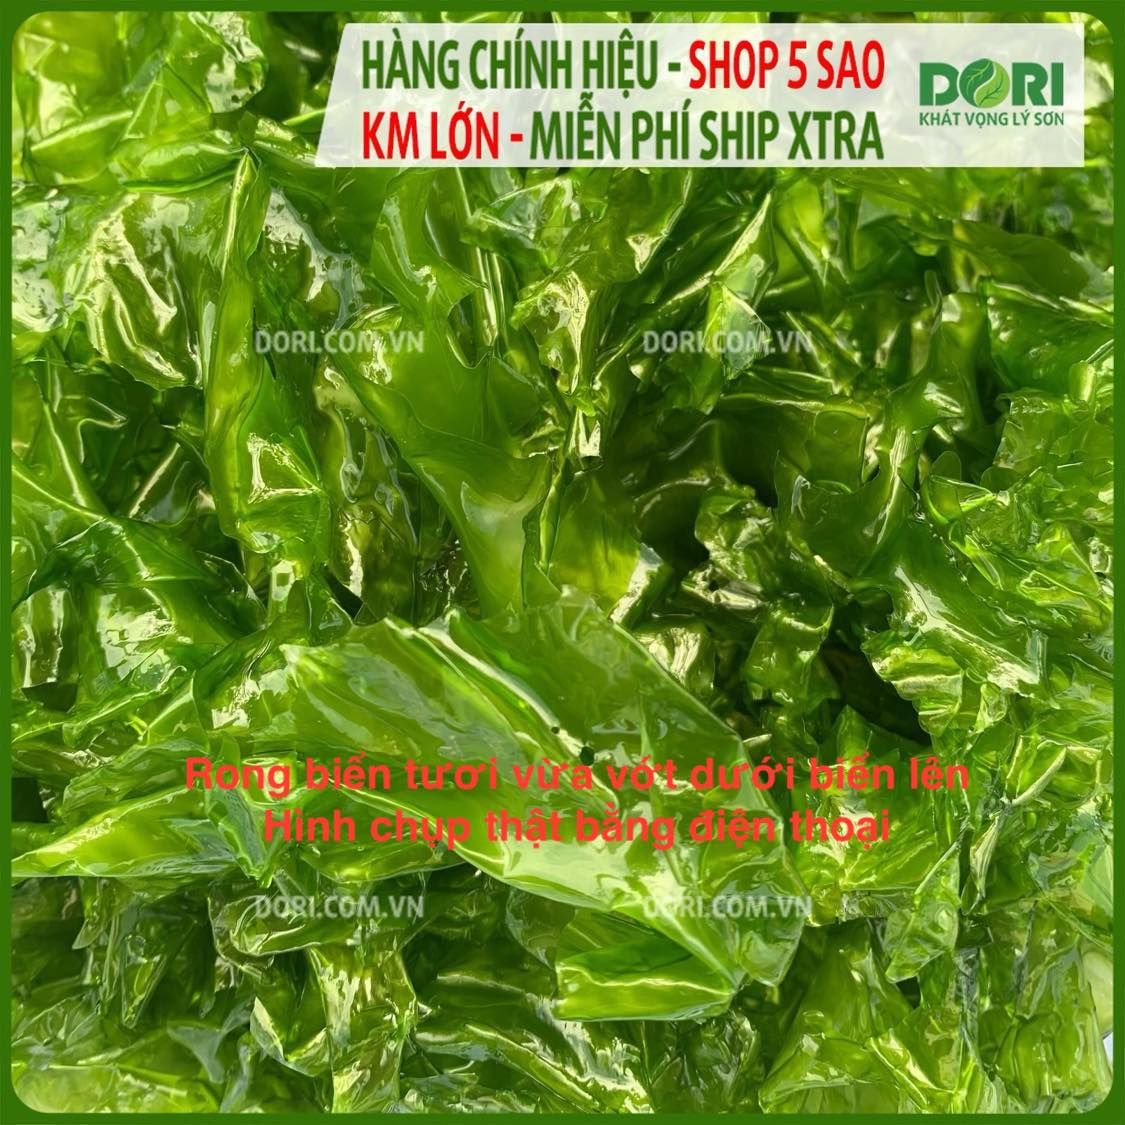 Rong biển xanh - Rong xà lách khô Dori Food - bổ sung khoáng chất và vitamin quý - Ulva Lactuca Dori Food